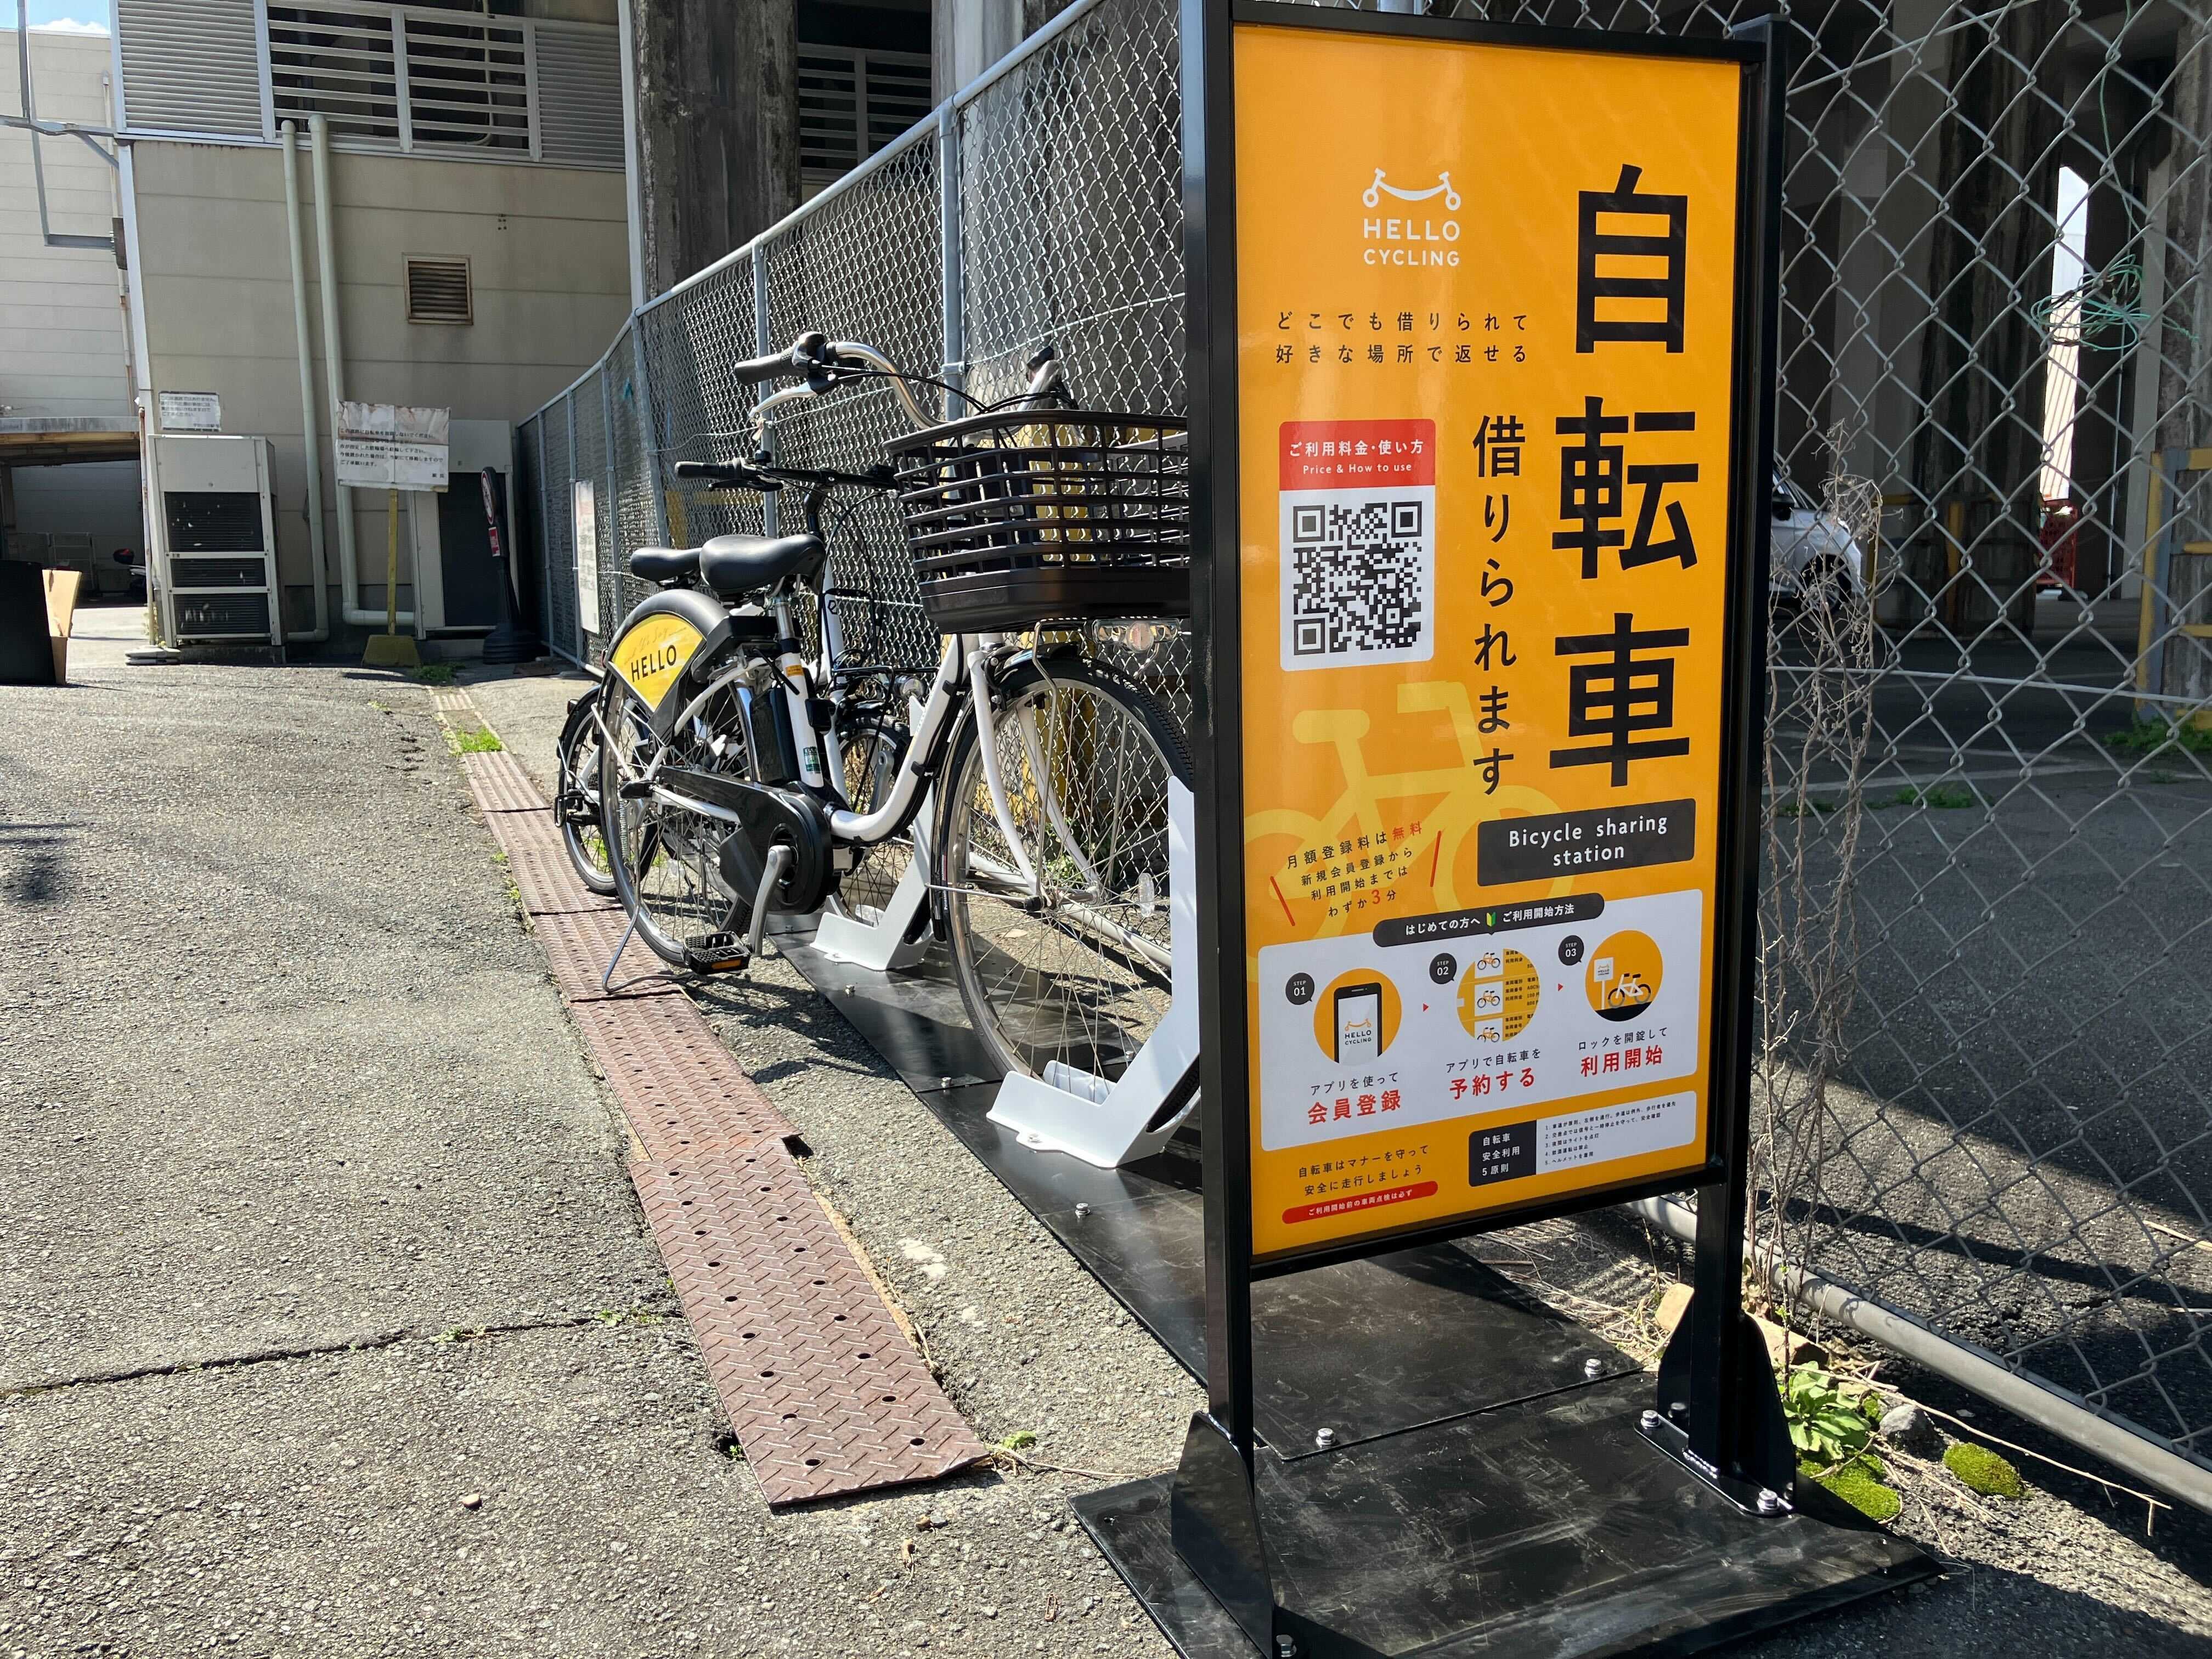 近鉄宇治山田駅 (HELLO CYCLING ポート)の画像1